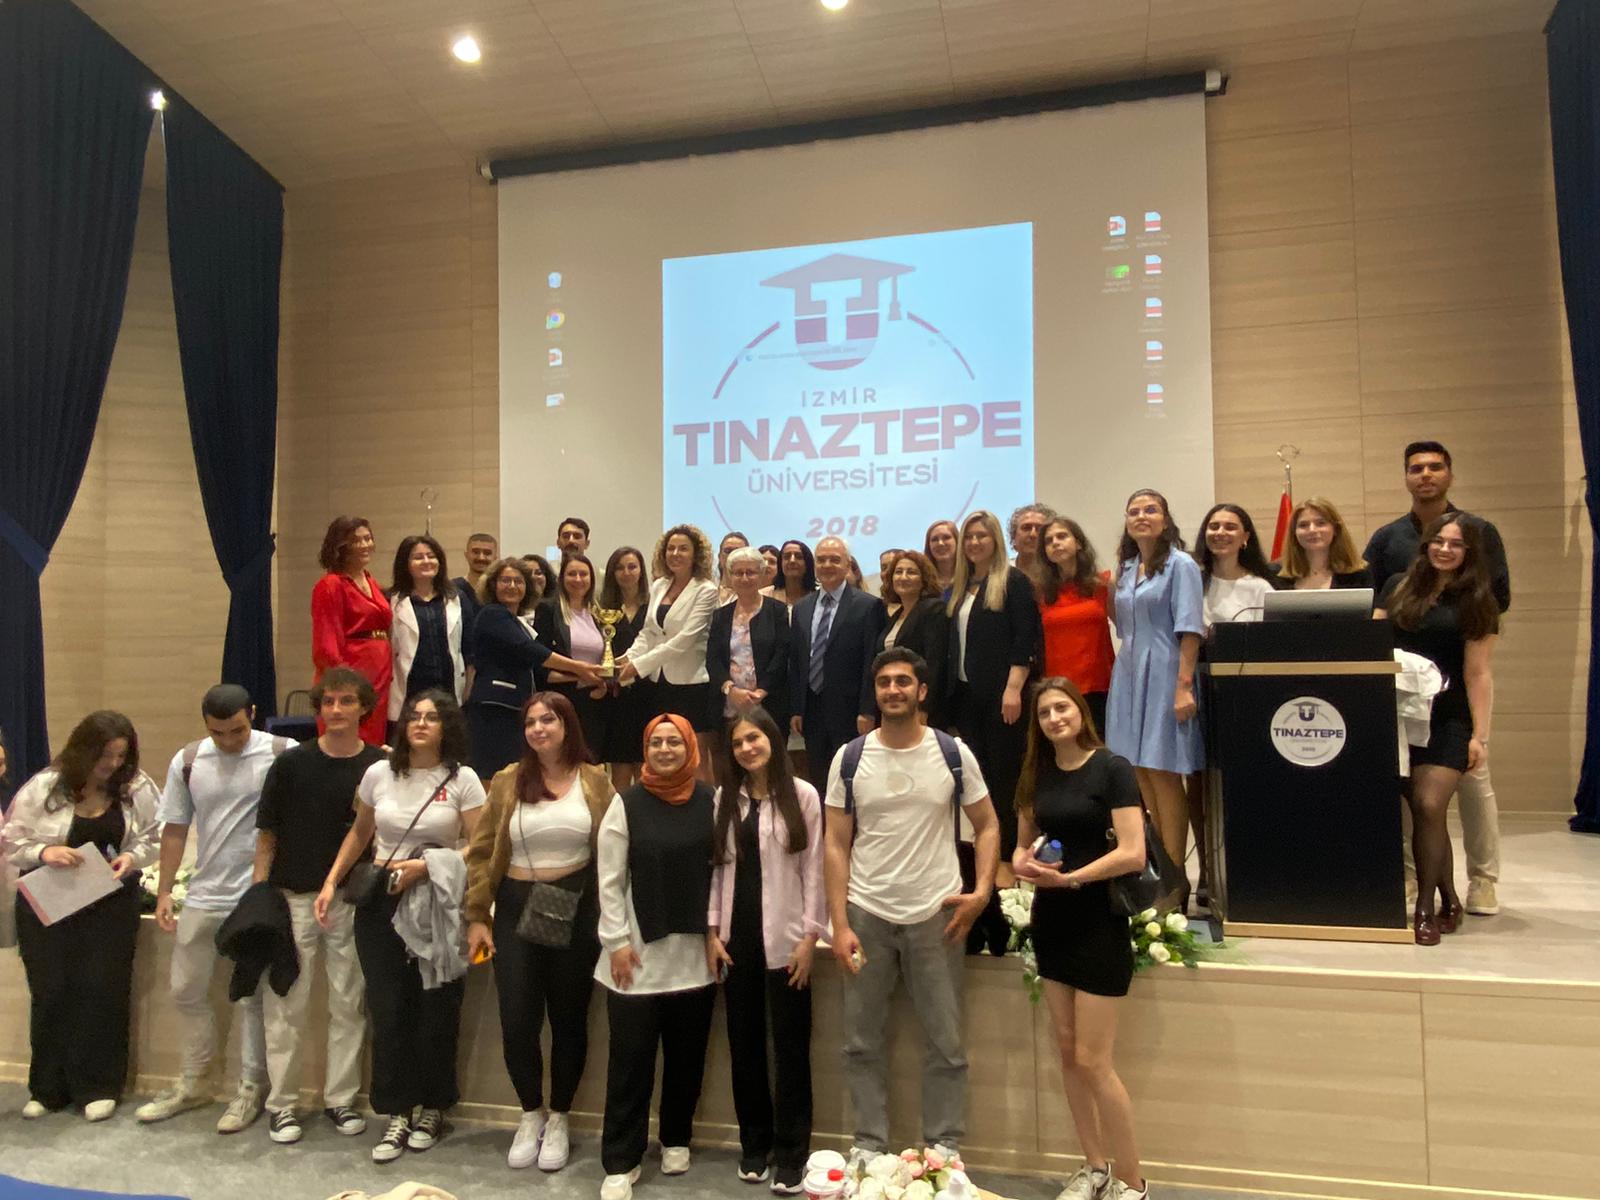 izmitinaz universitesi find and study 9 - Université d'Izmir Tınaztepe